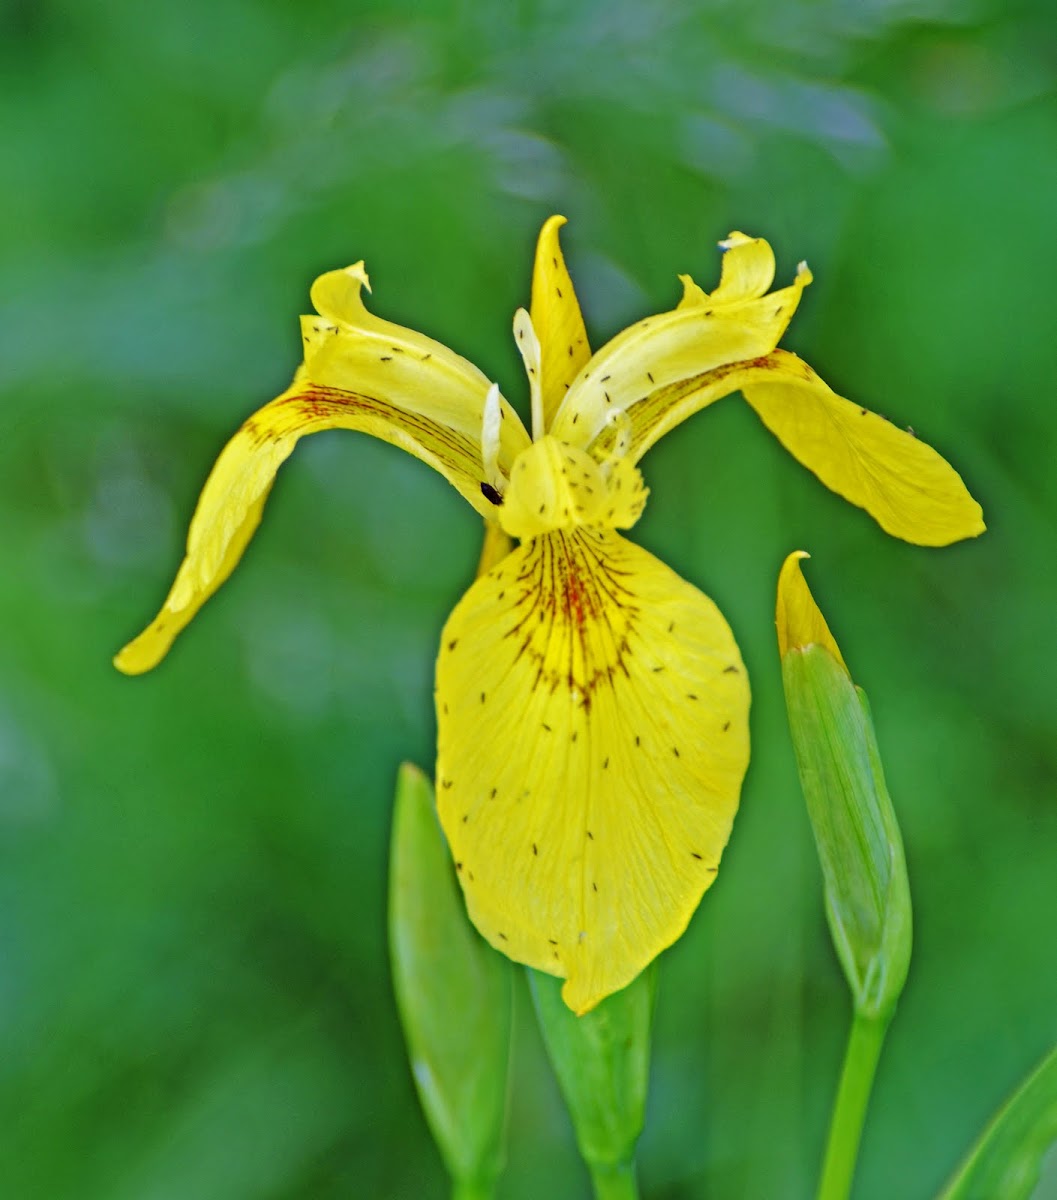 Wild swamp yellow iris